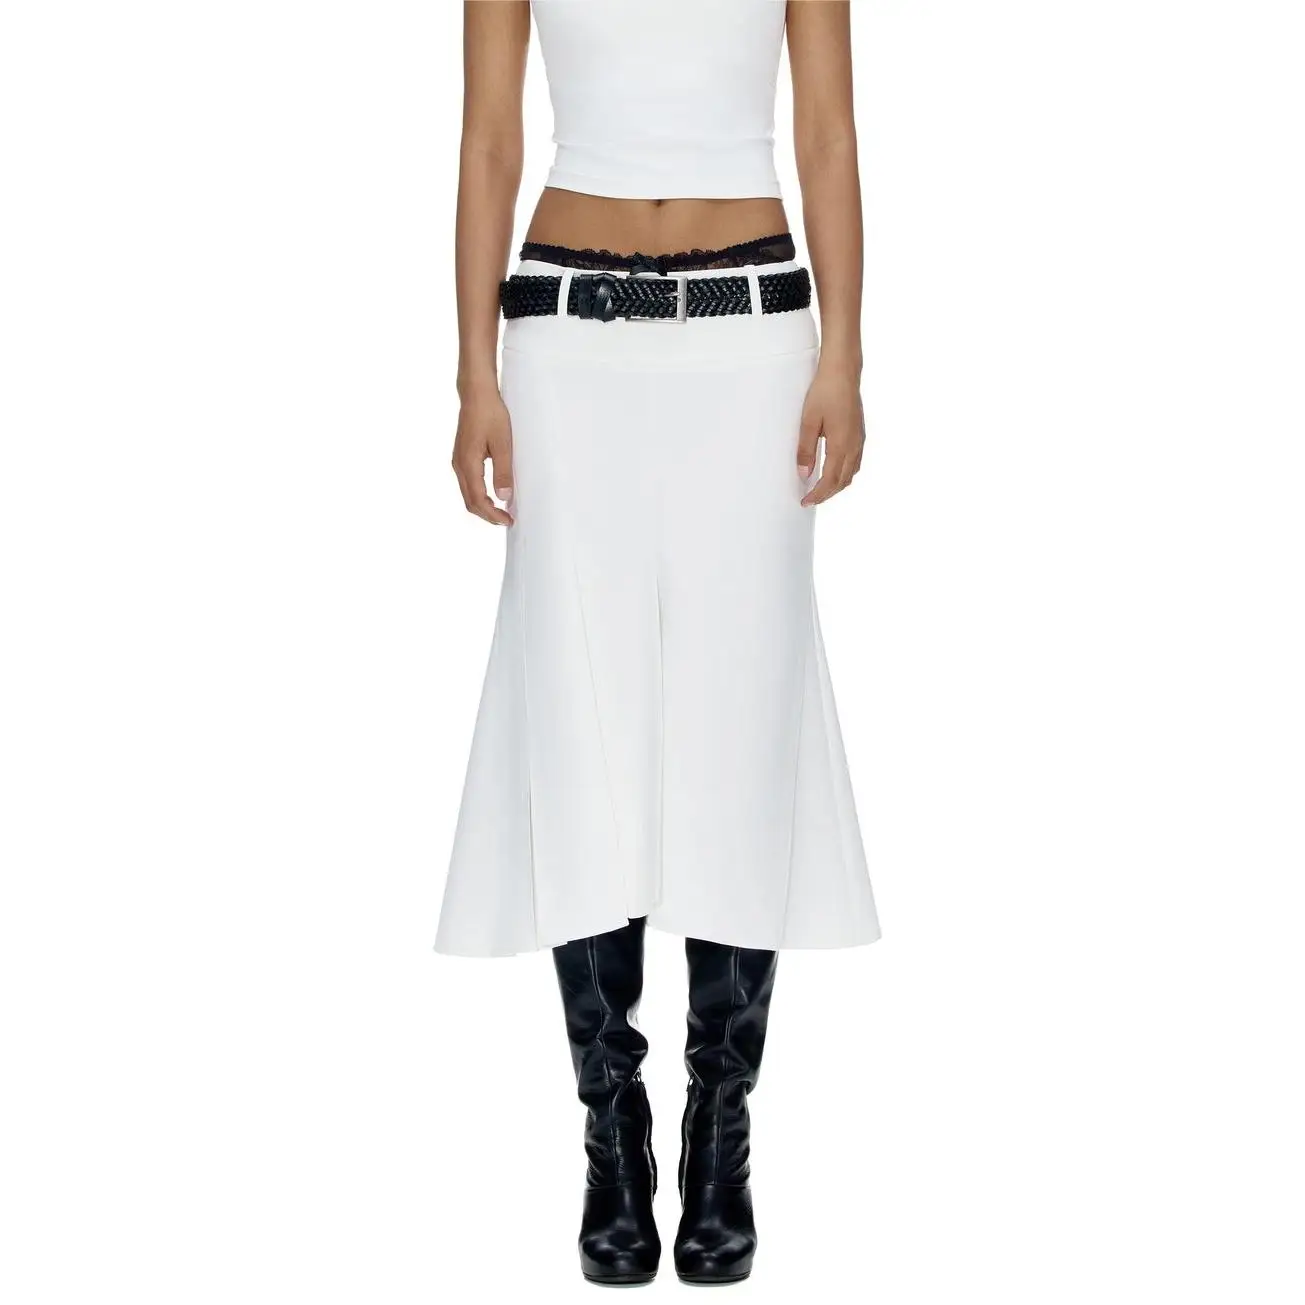 

Midi skirts vintage clothes korean style skirts for women white skirt high waisted Trumpet asymmetrical skirt elegant black slit